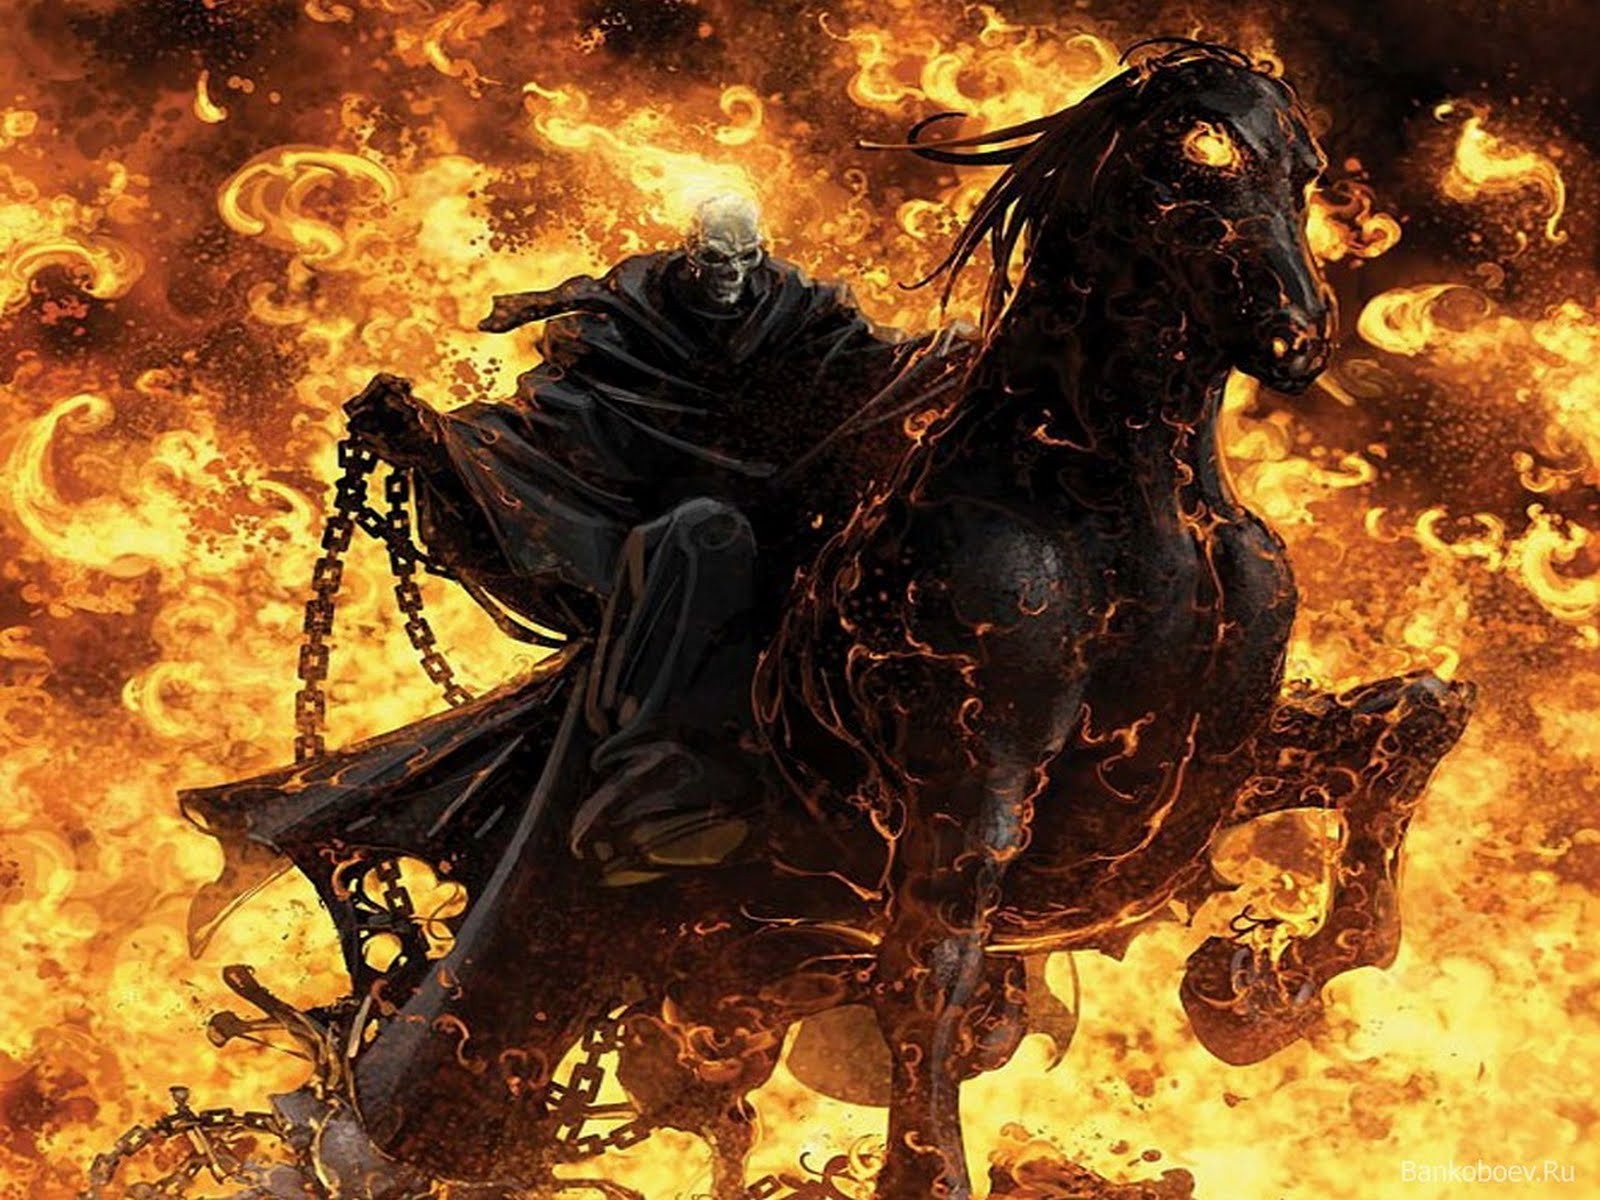 Ghost Rider ghost rider fire skull 1600x1200jpg 1600x1200